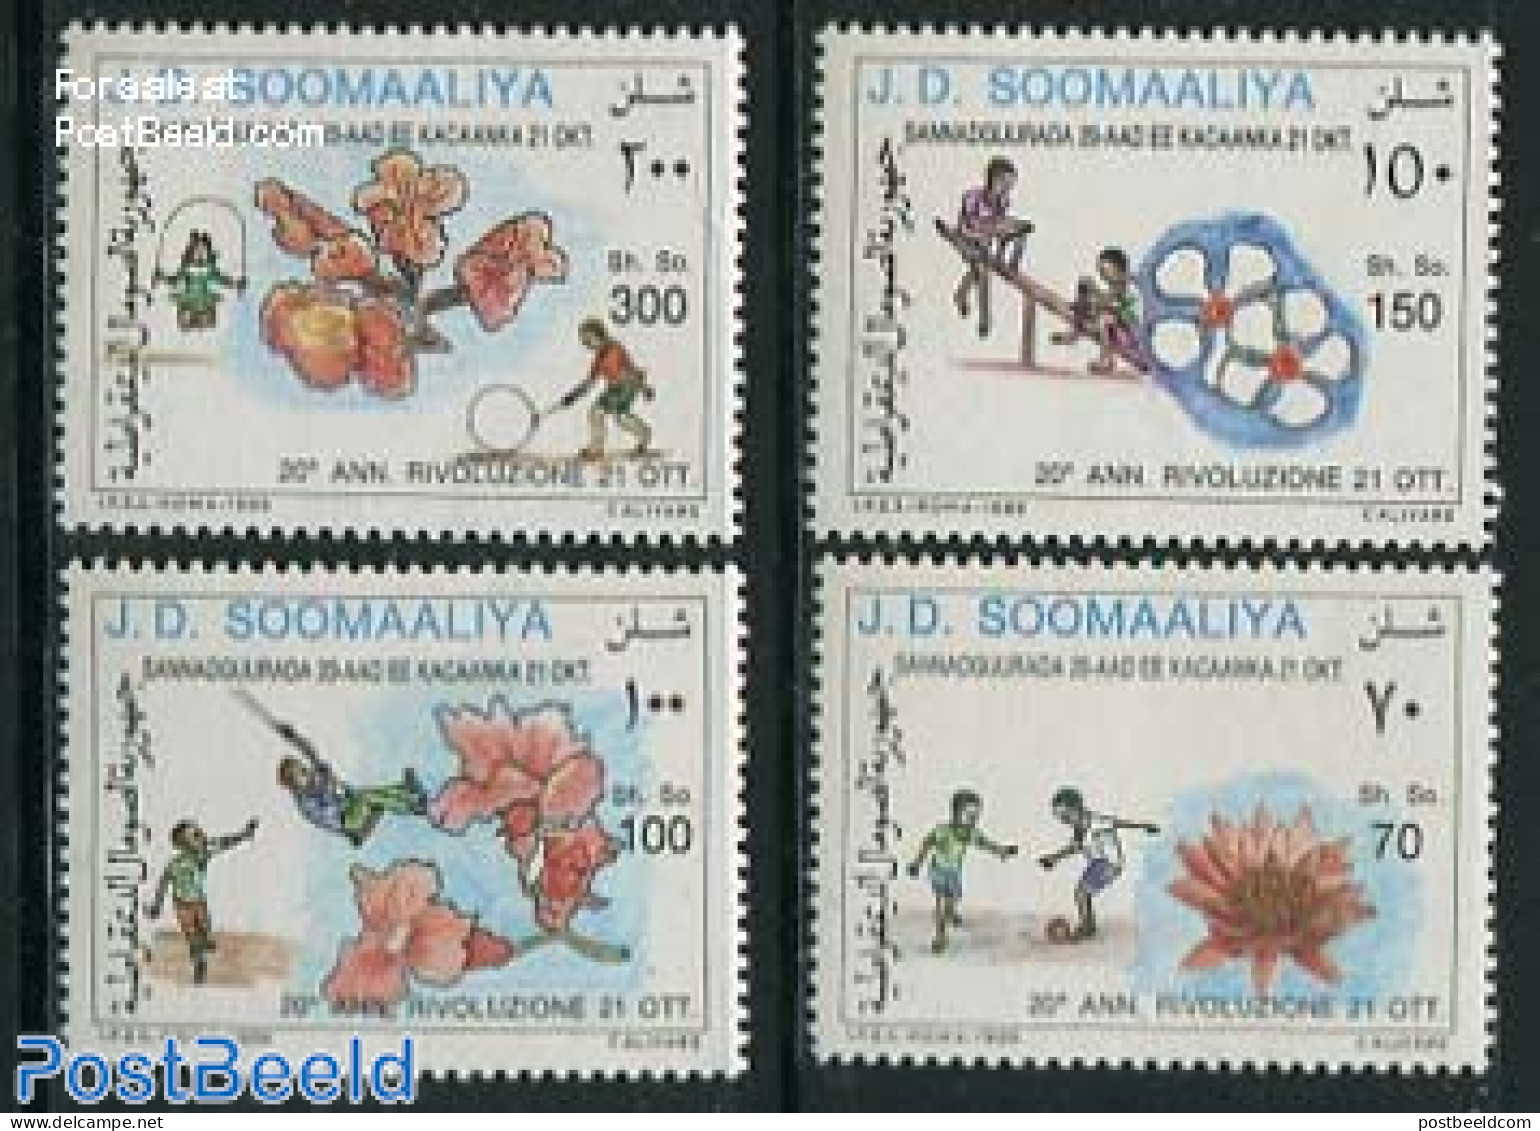 Somalia 1989 October Revolution 4v, Mint NH, Various - Toys & Children's Games - Somalië (1960-...)